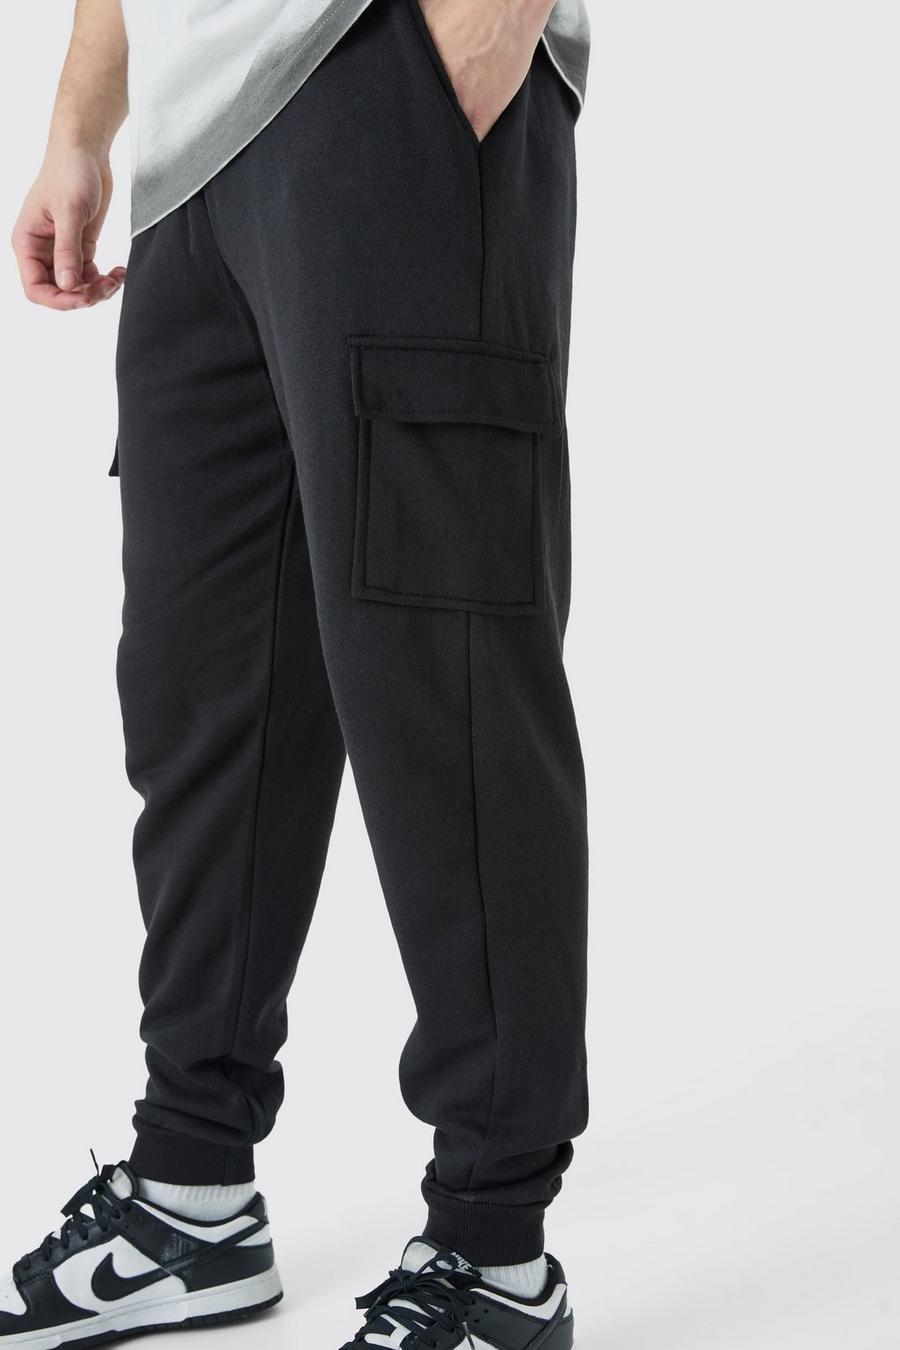 Pantaloni tuta Cargo Tall Core Fit, Black